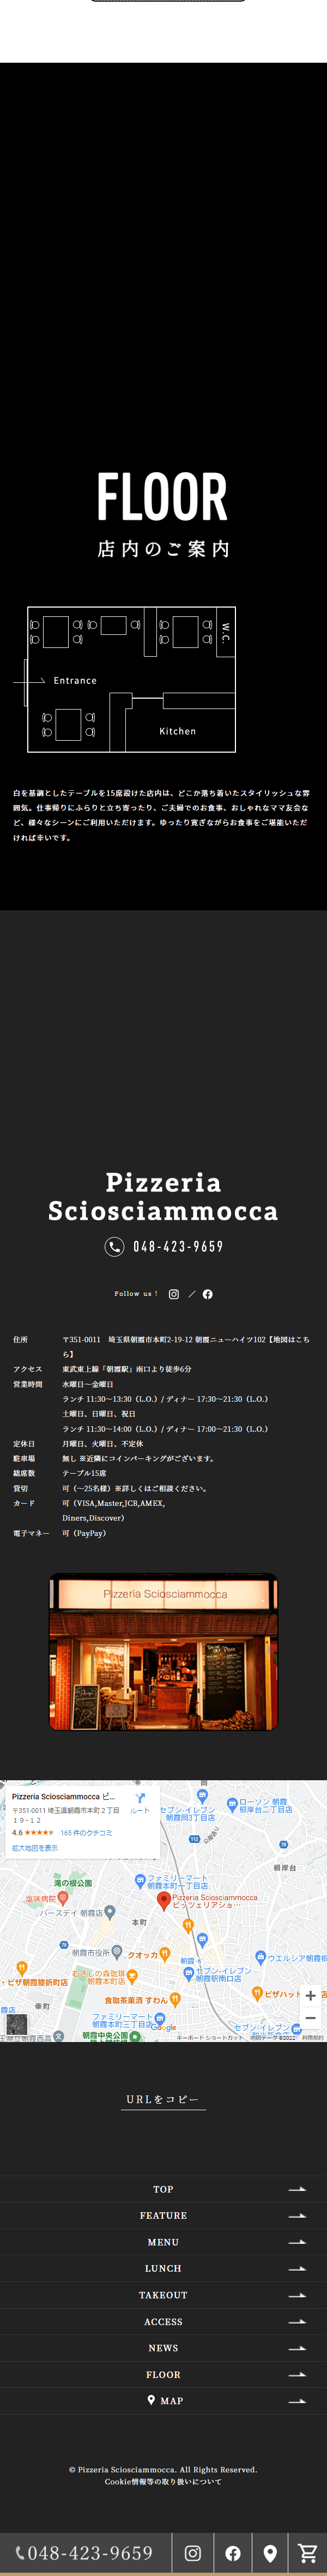 Pizzeria Sciosciammocca_sp_2